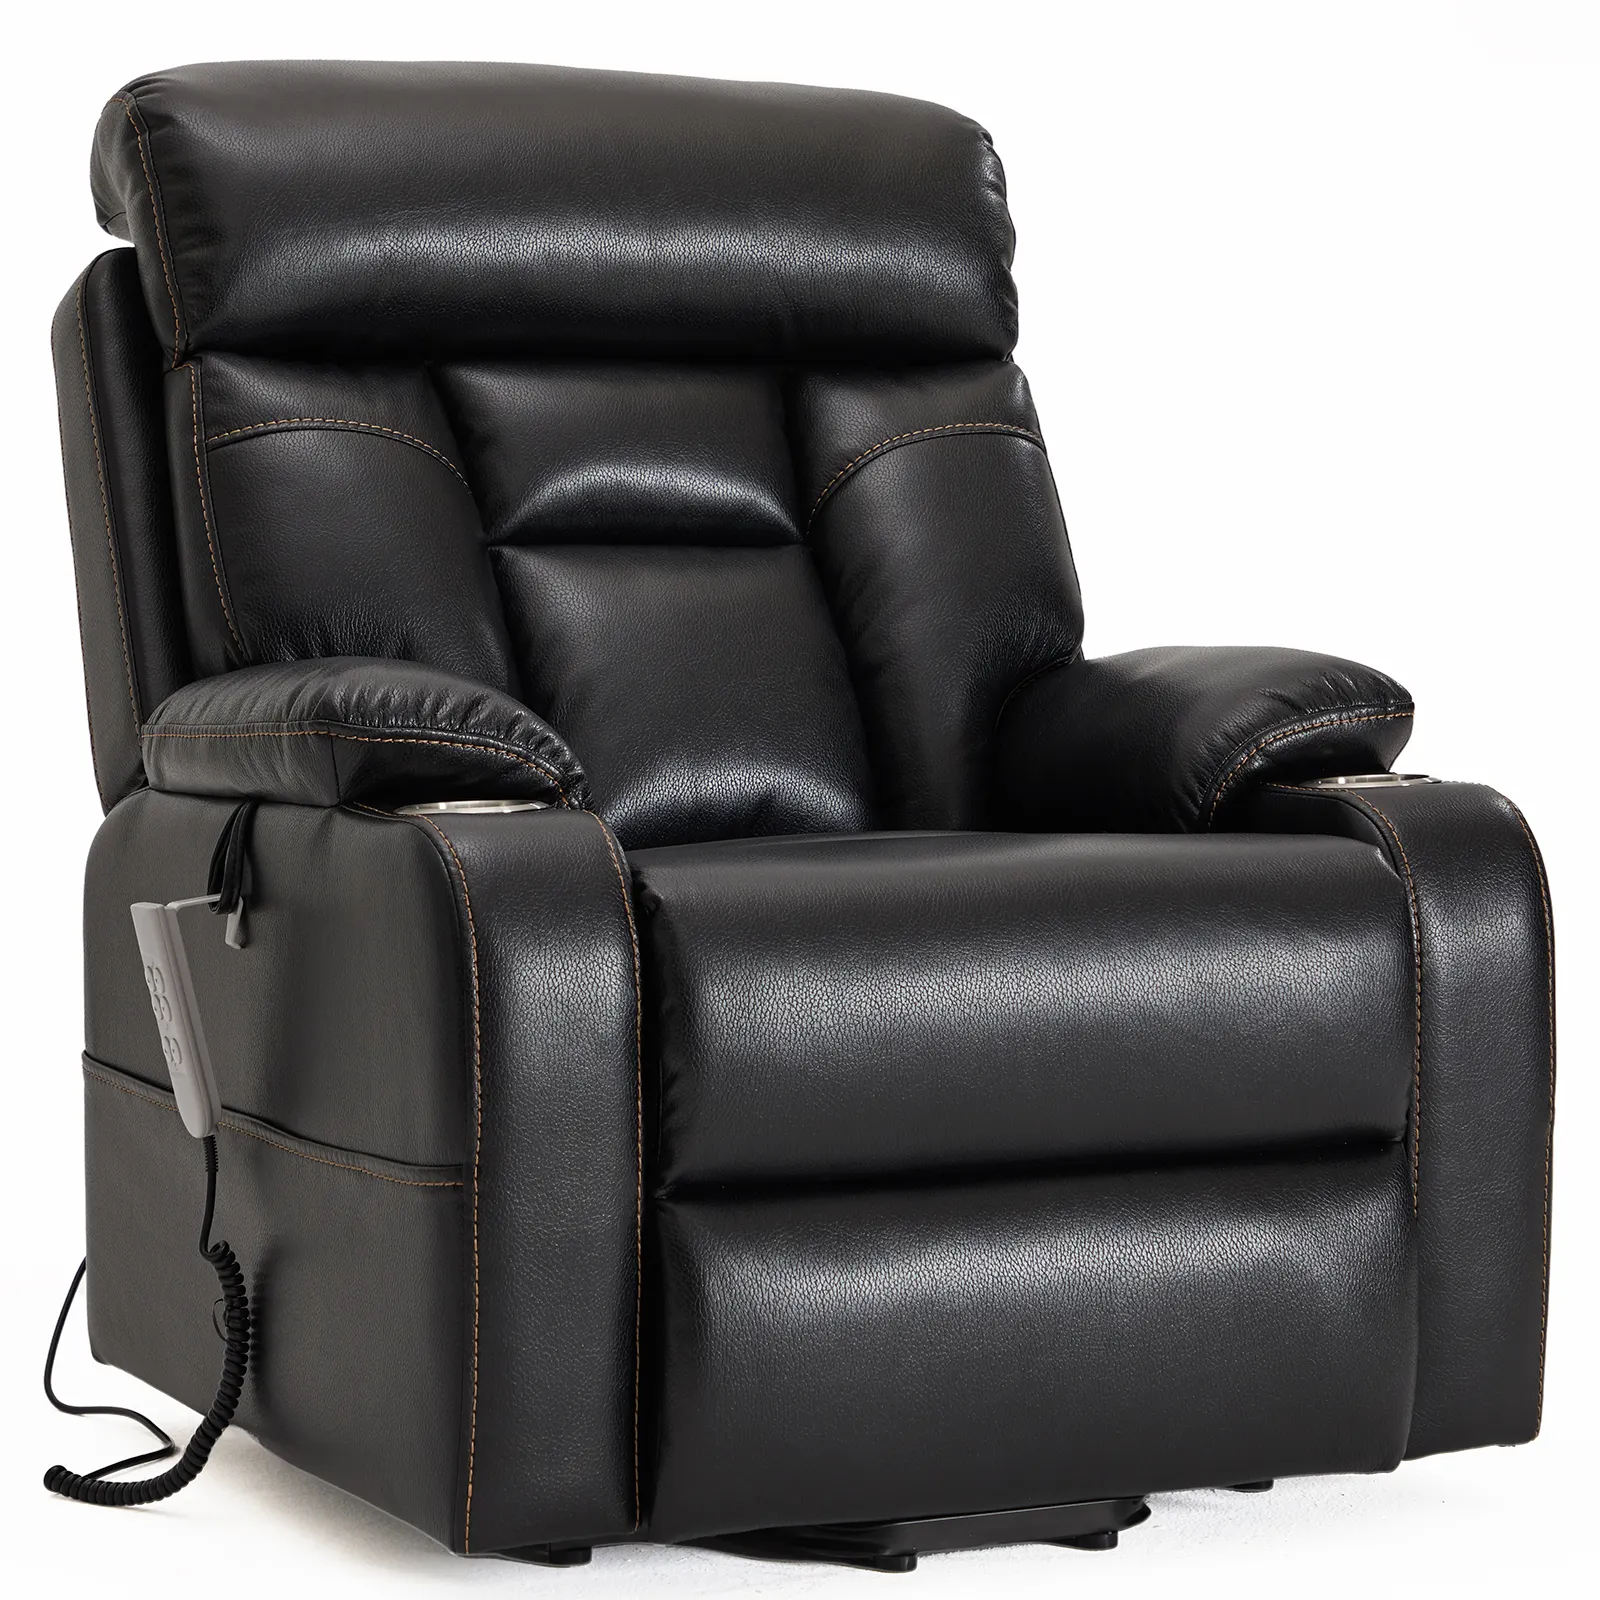 조정 가능한 요추 지지대가 있는 CJSmart 홈 리프트 의자 노인용 파워 리프트 안락 의자, 플랫 3 OKIN 모터 배치